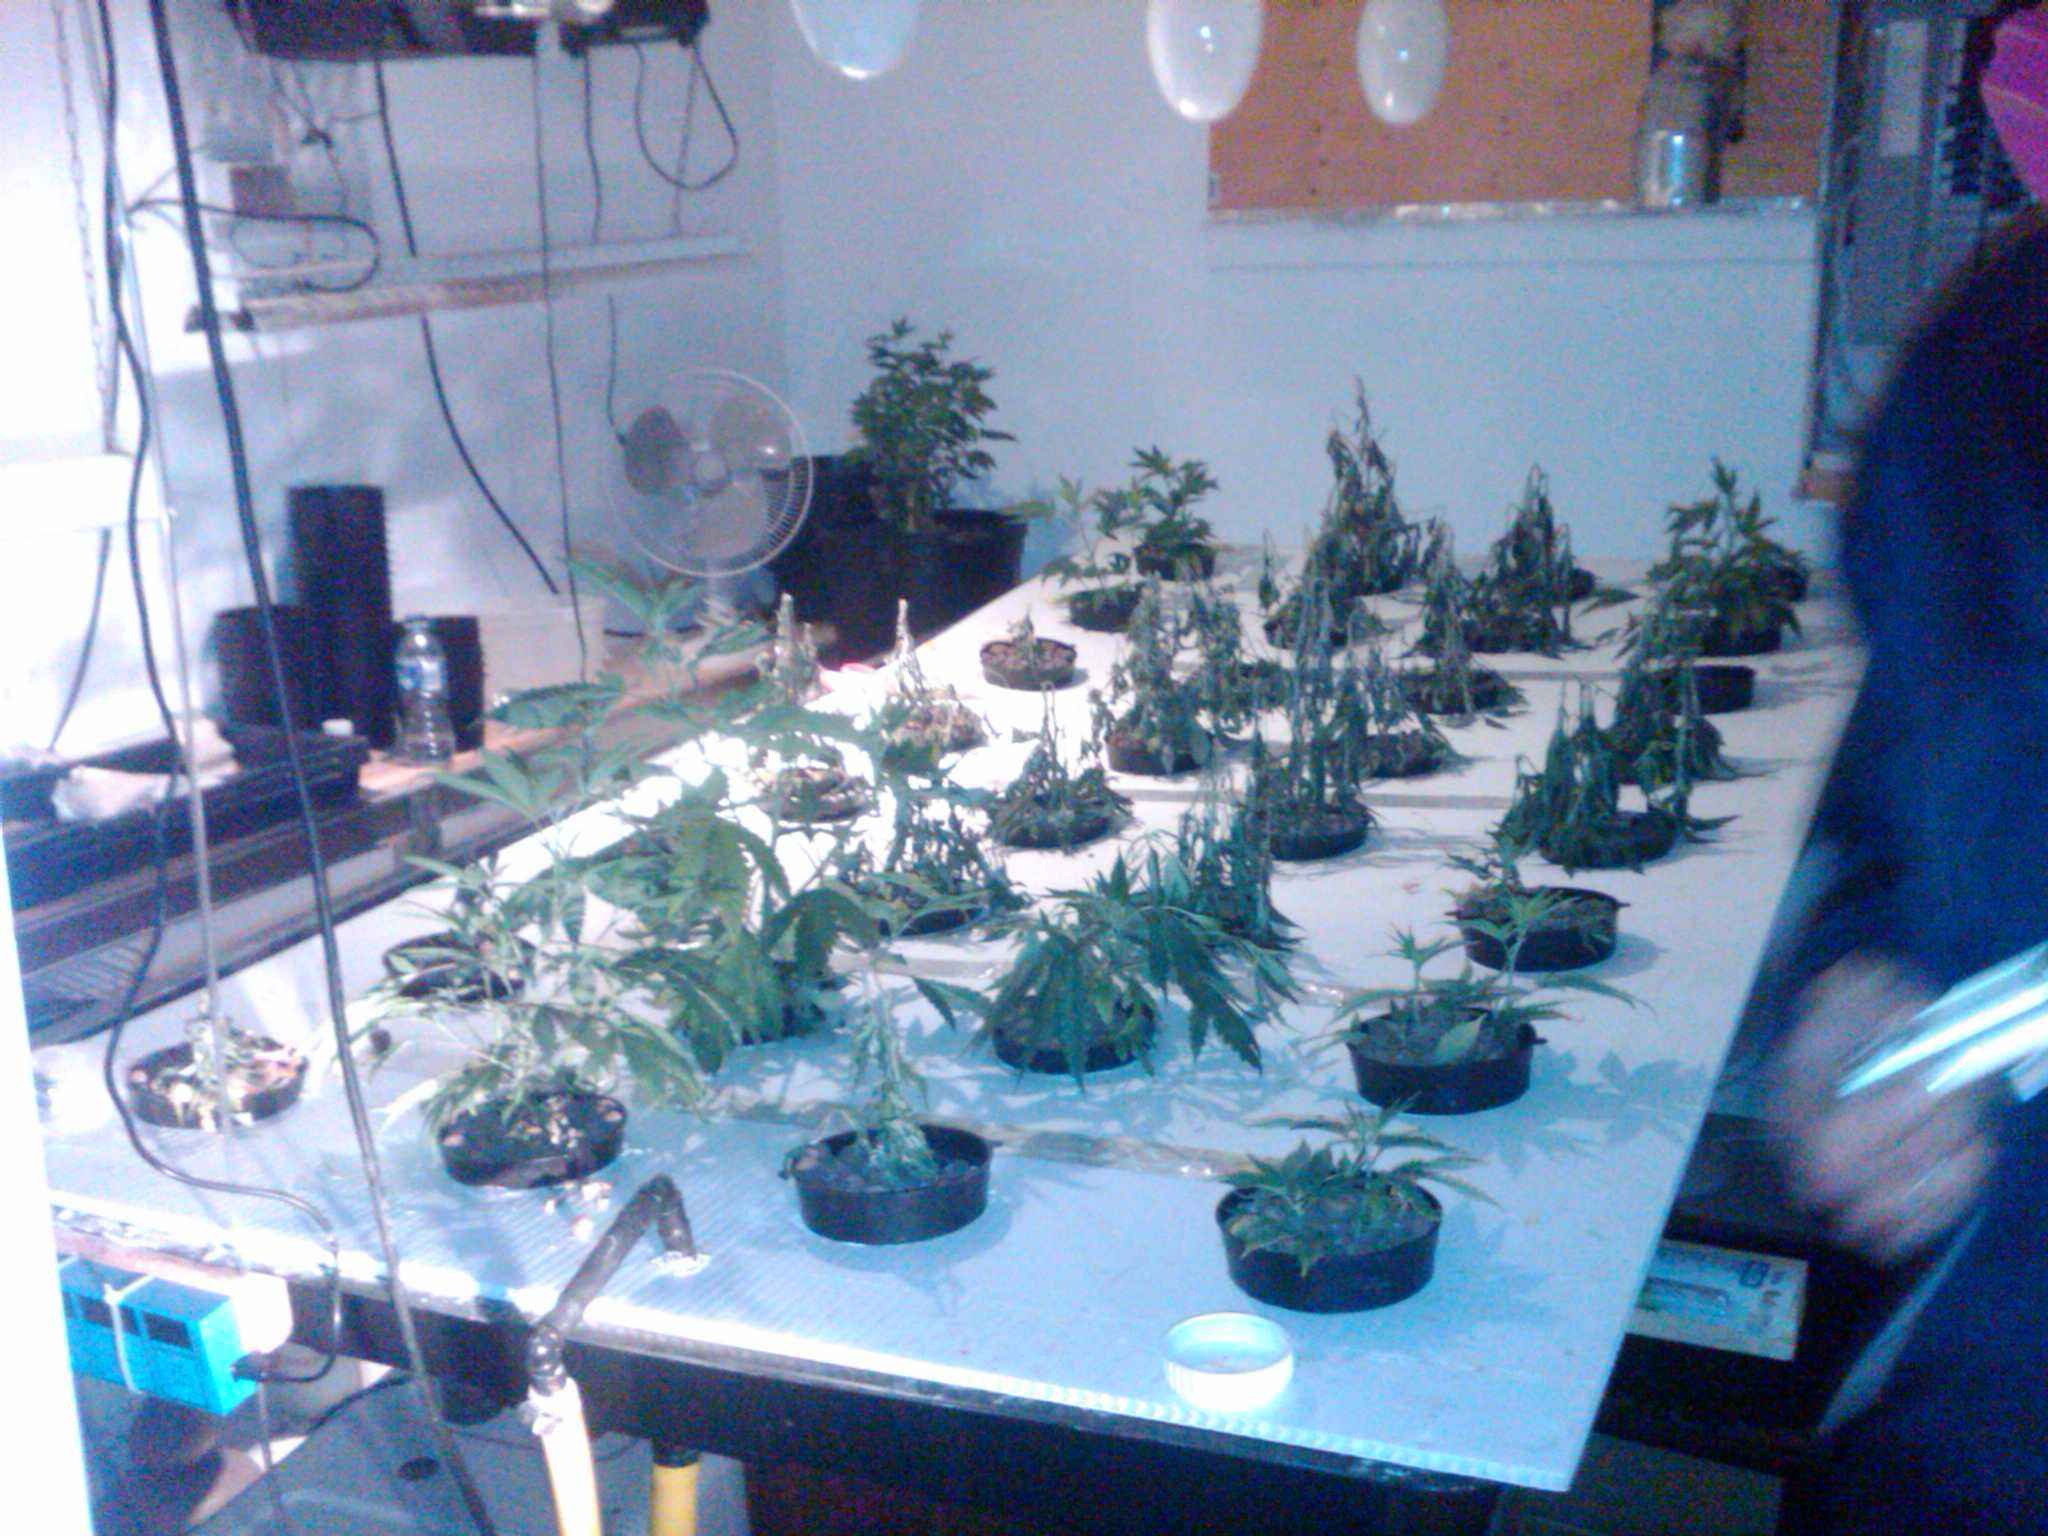 weed, grow ops, calgary, hazmat, mayken